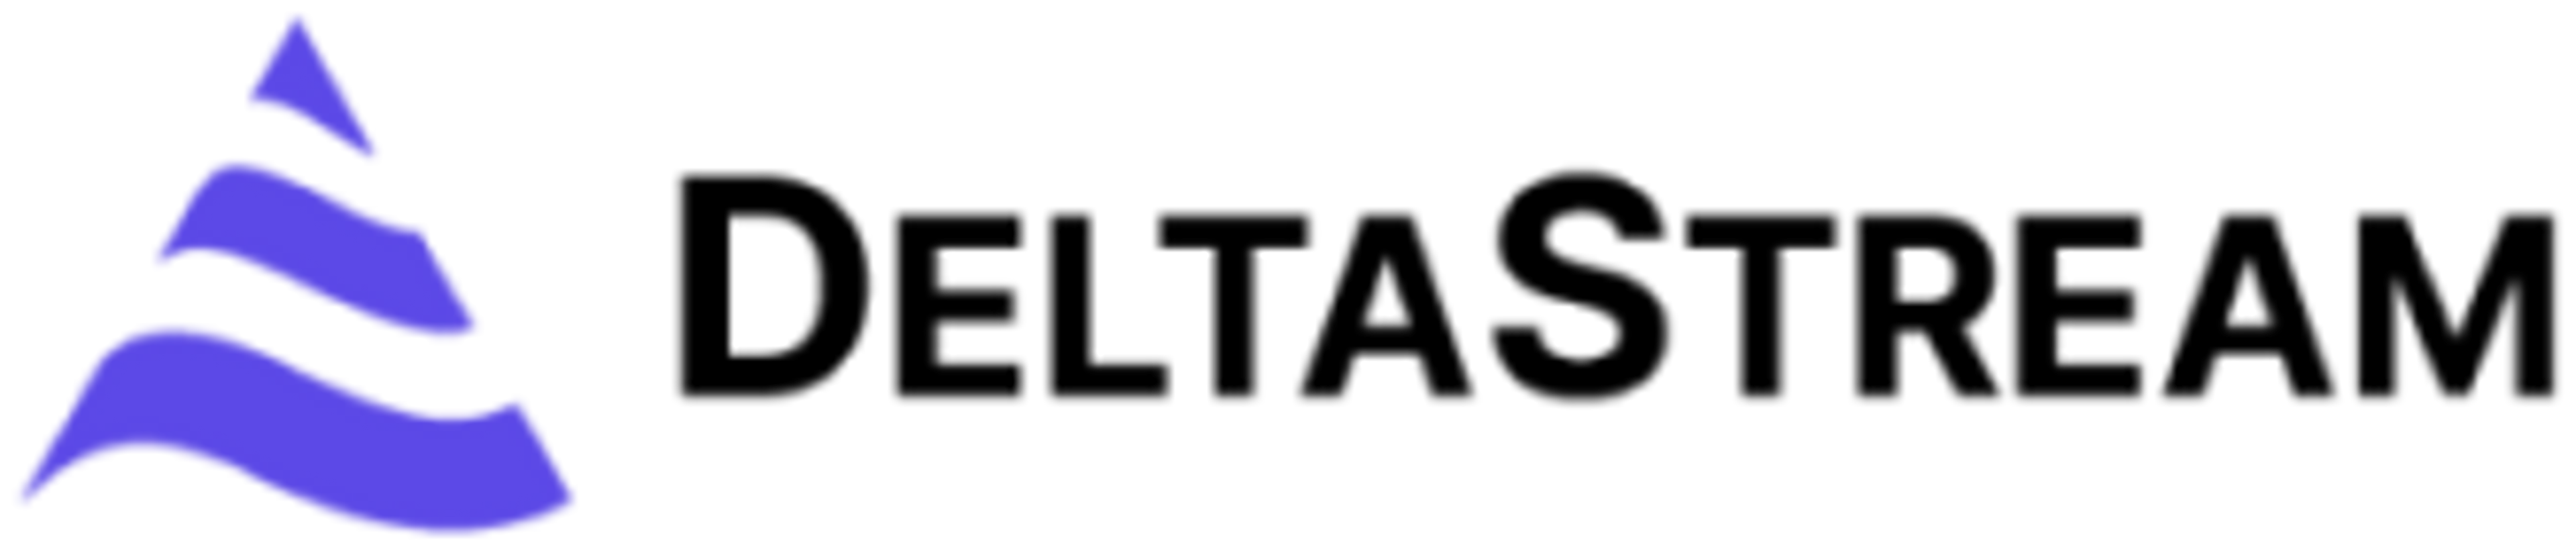 DeltaStream logo